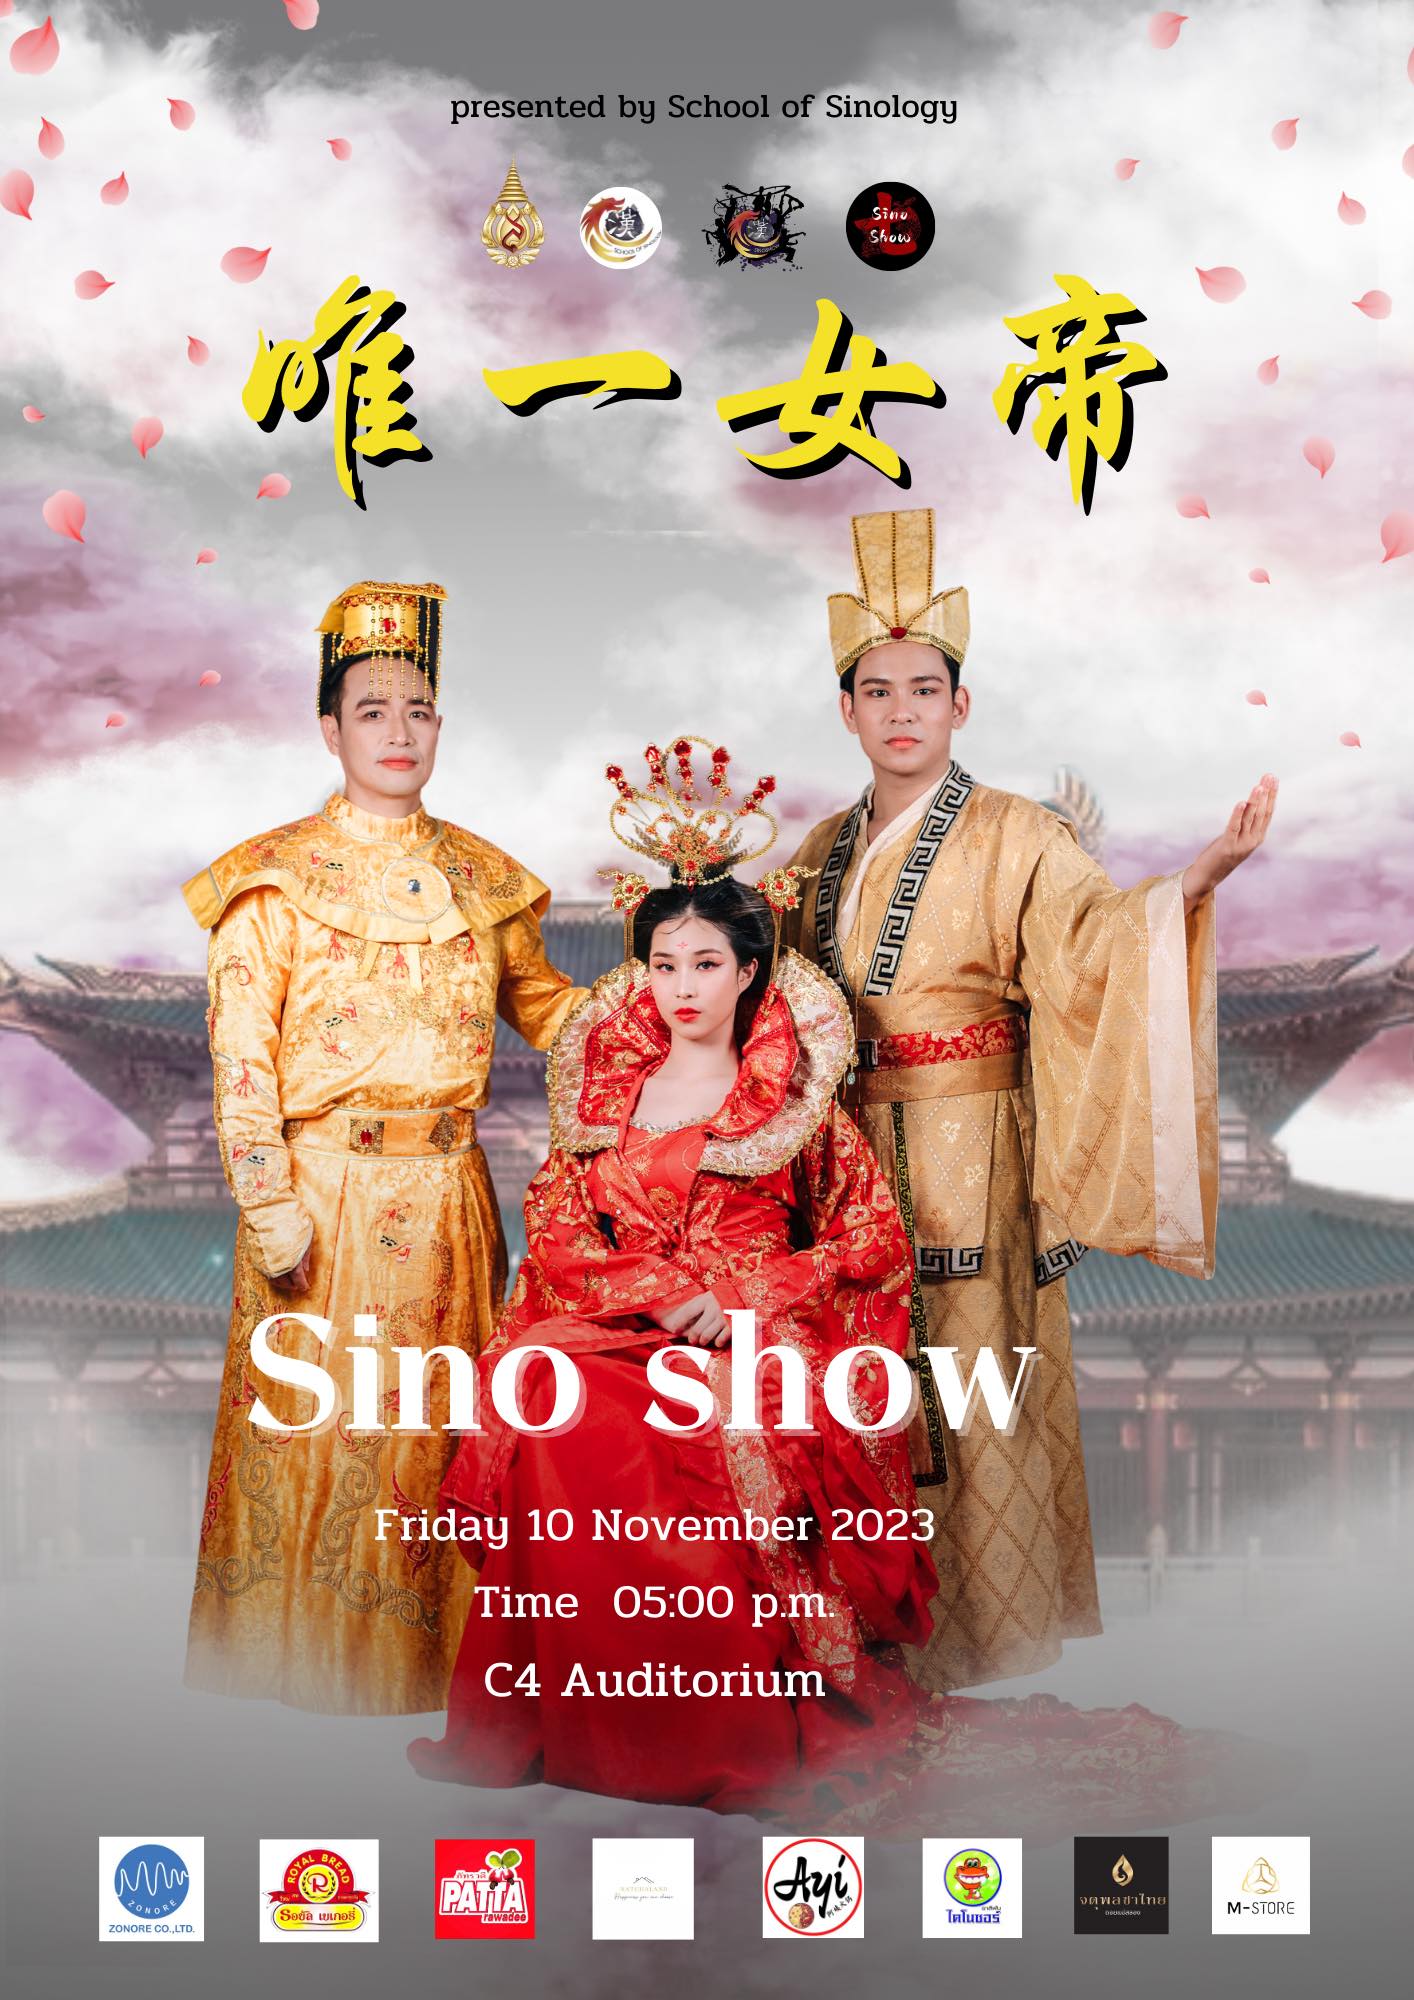  เปิดตัวธีมงาน Sino Show7 อย่างเป็นทางการในชื่อ “唯一女帝” บูแช็คเทียน จอมนางเหนือบัลลังก์